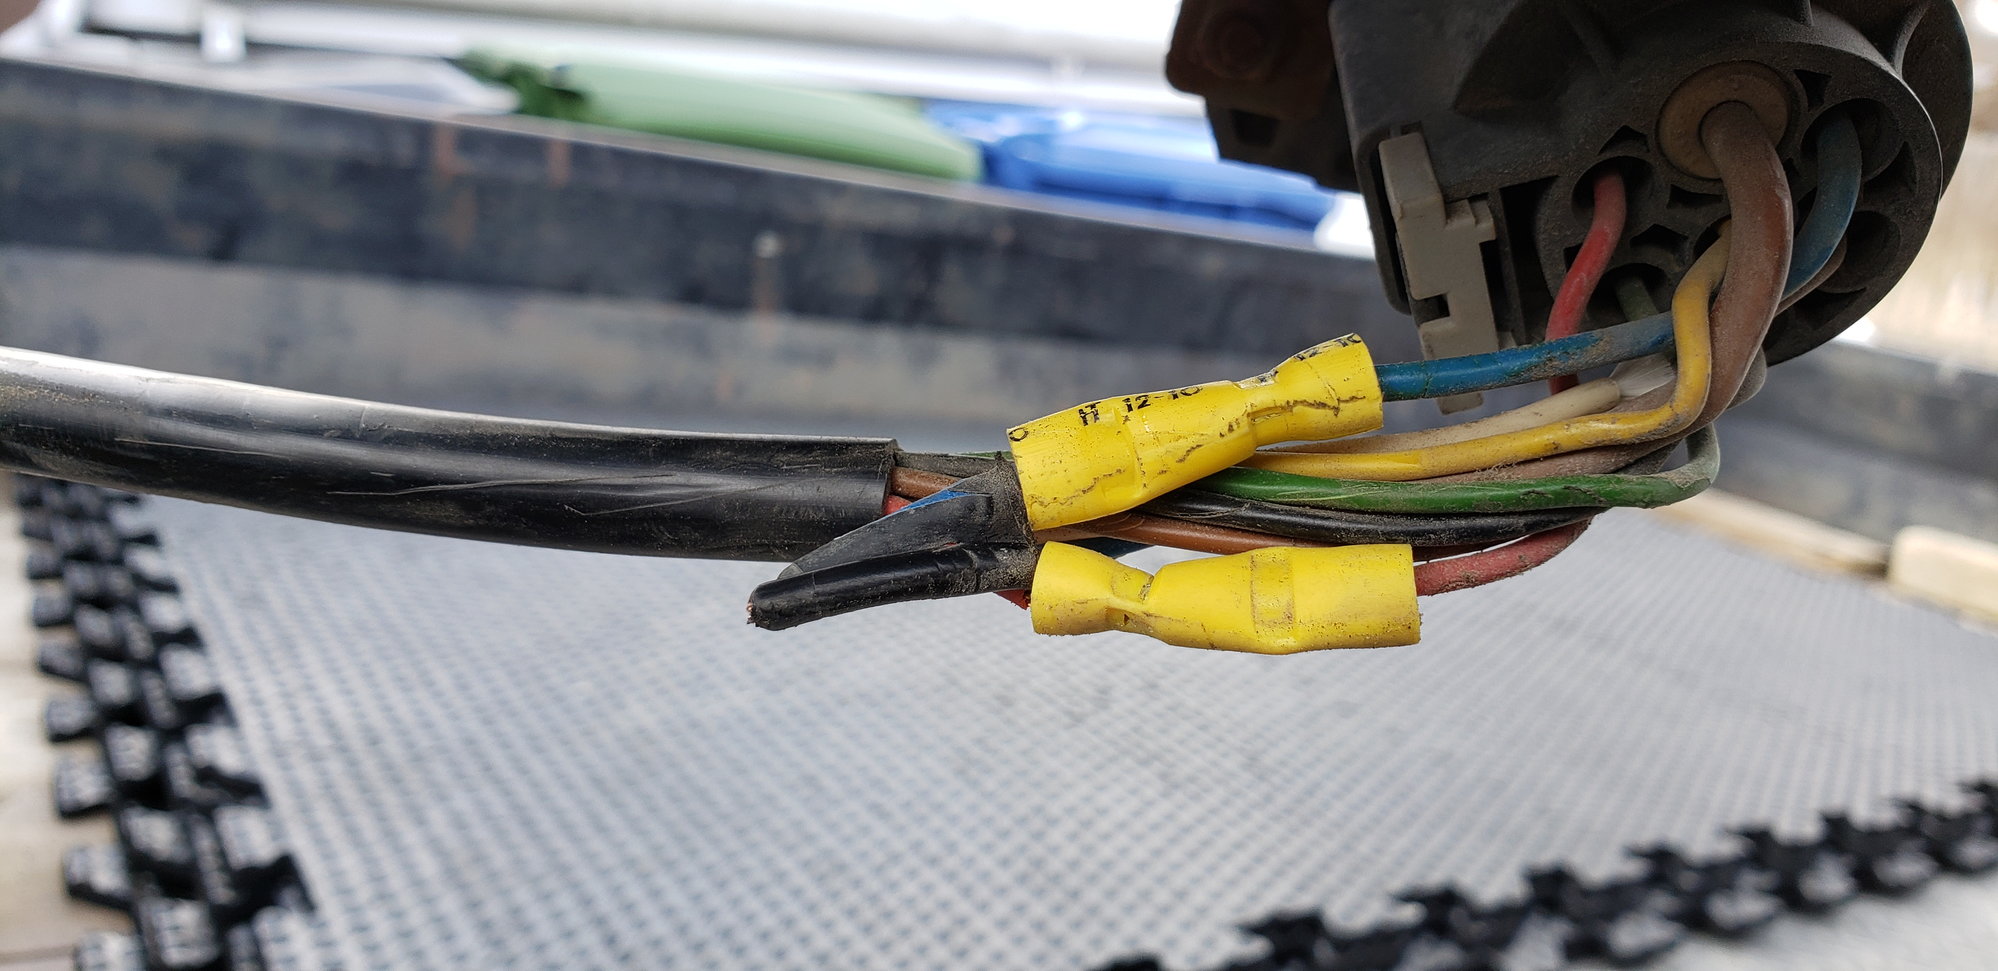 Trailer wiring harness diagram? - 6SpeedOnline - Porsche Forum and